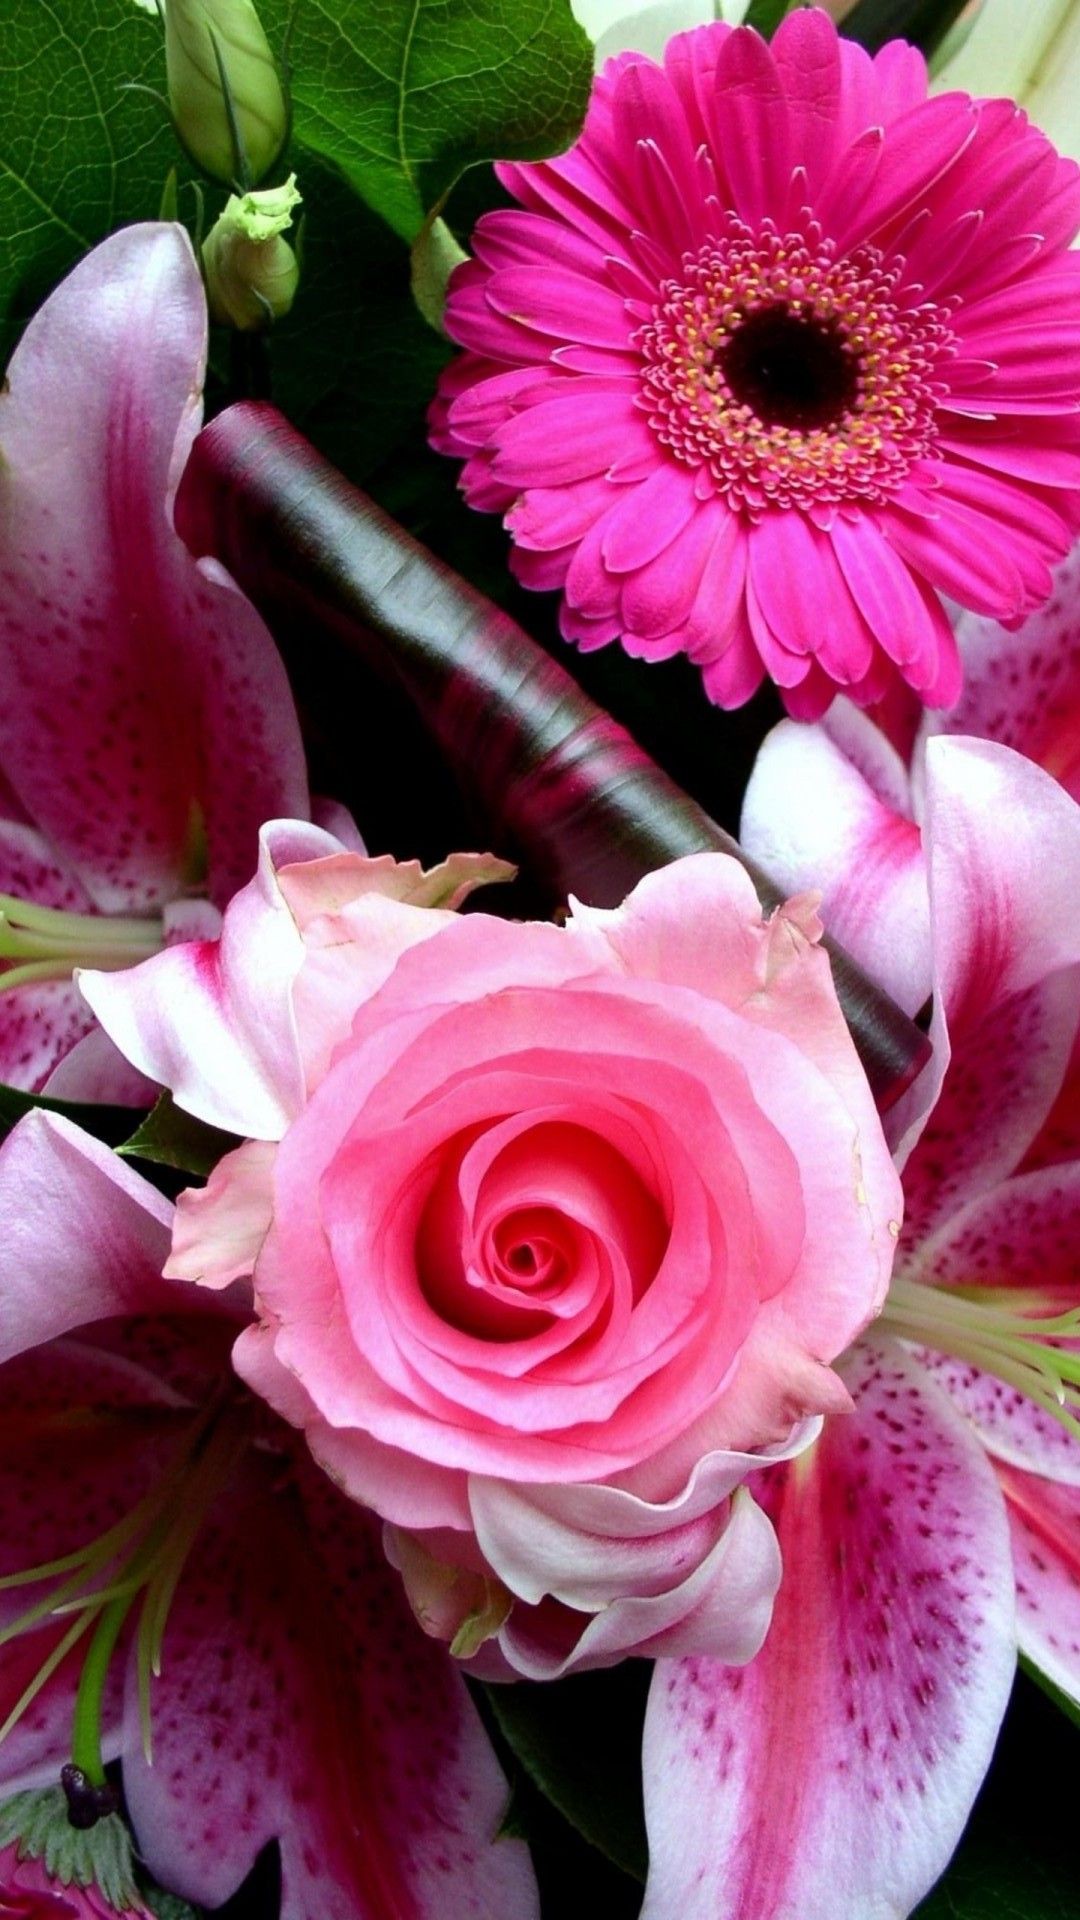 iPhone Wallpaper HD Pink Flower Cute Wallpaper